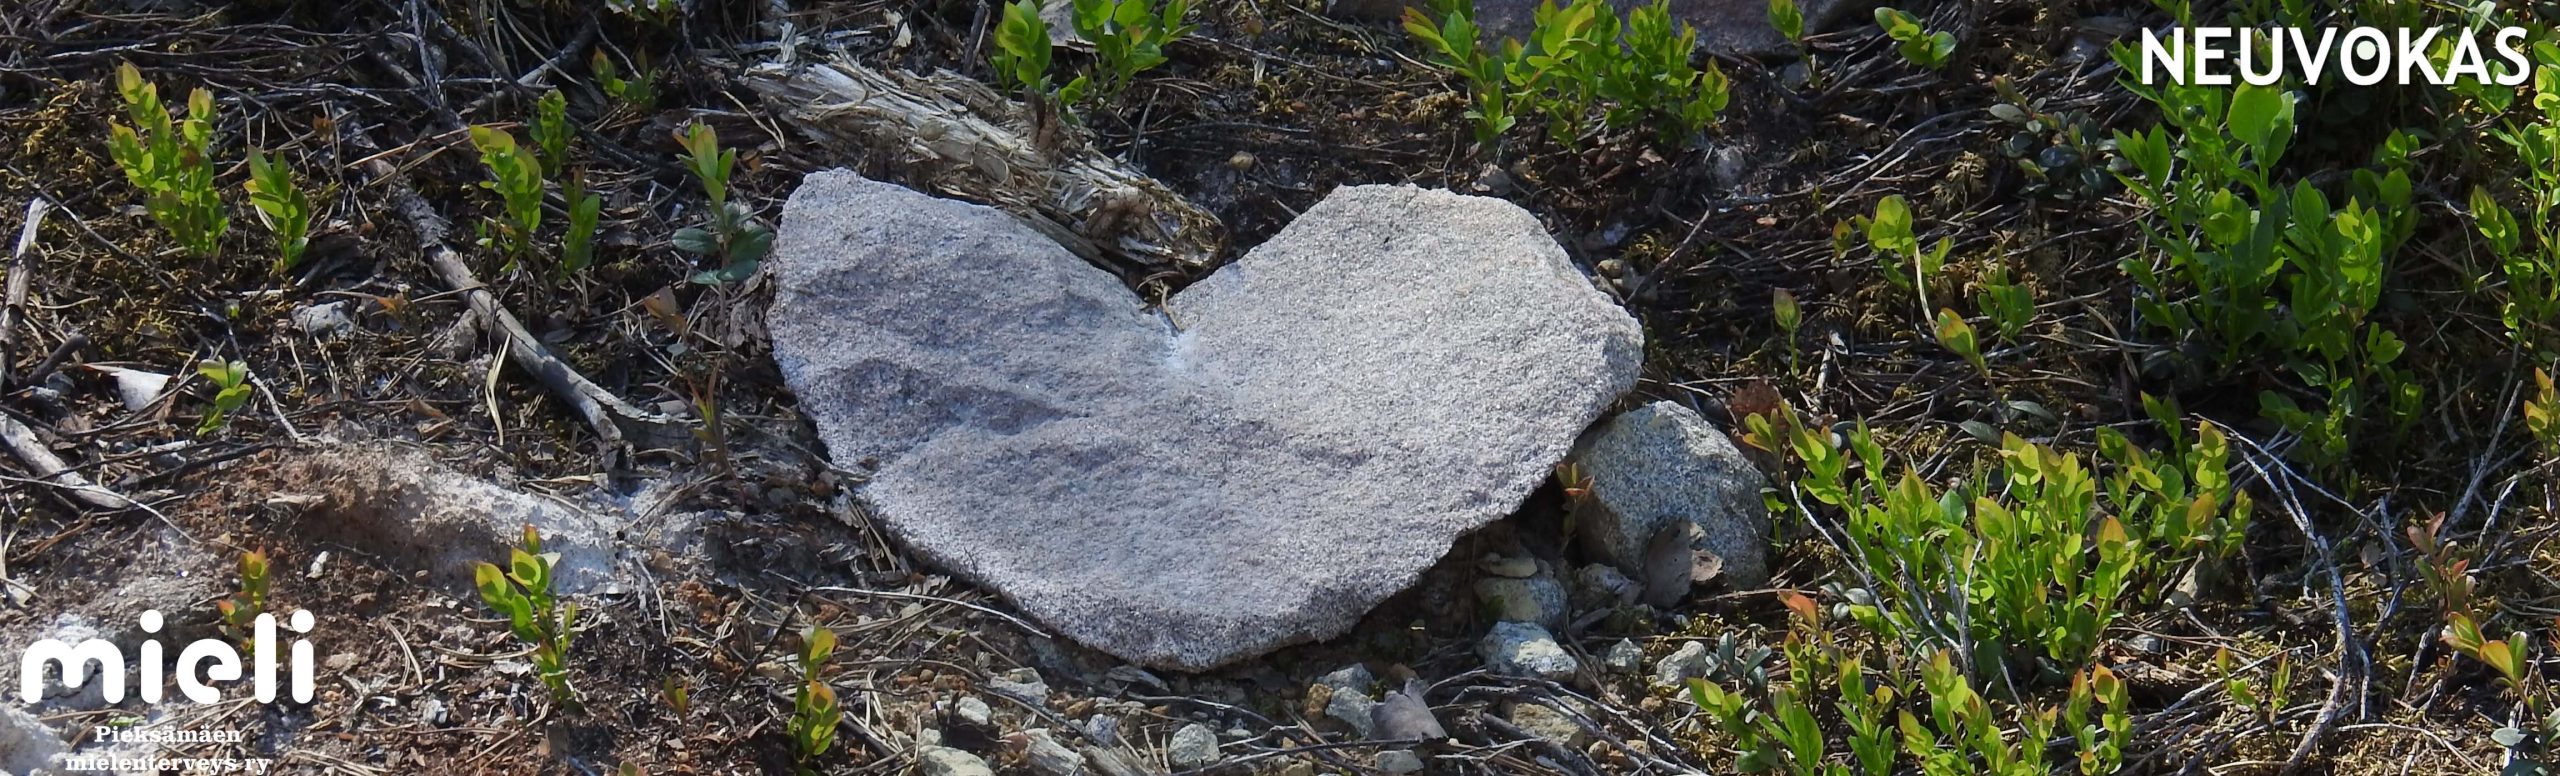 kuvituskuva: sydämen muotoinen kivi